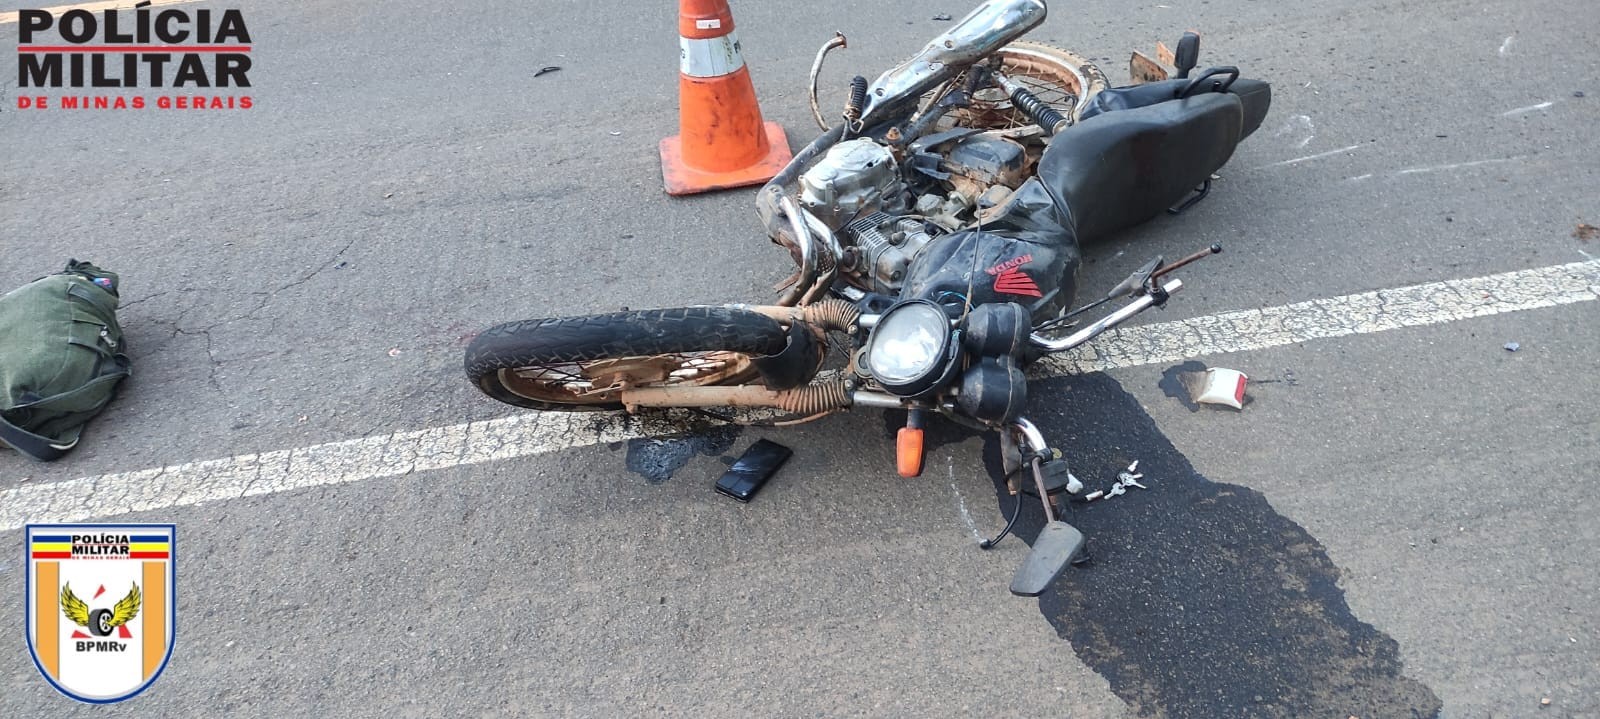 Motociclista de 23 anos morre após batida com carreta na MG-184, em Alterosa, MG